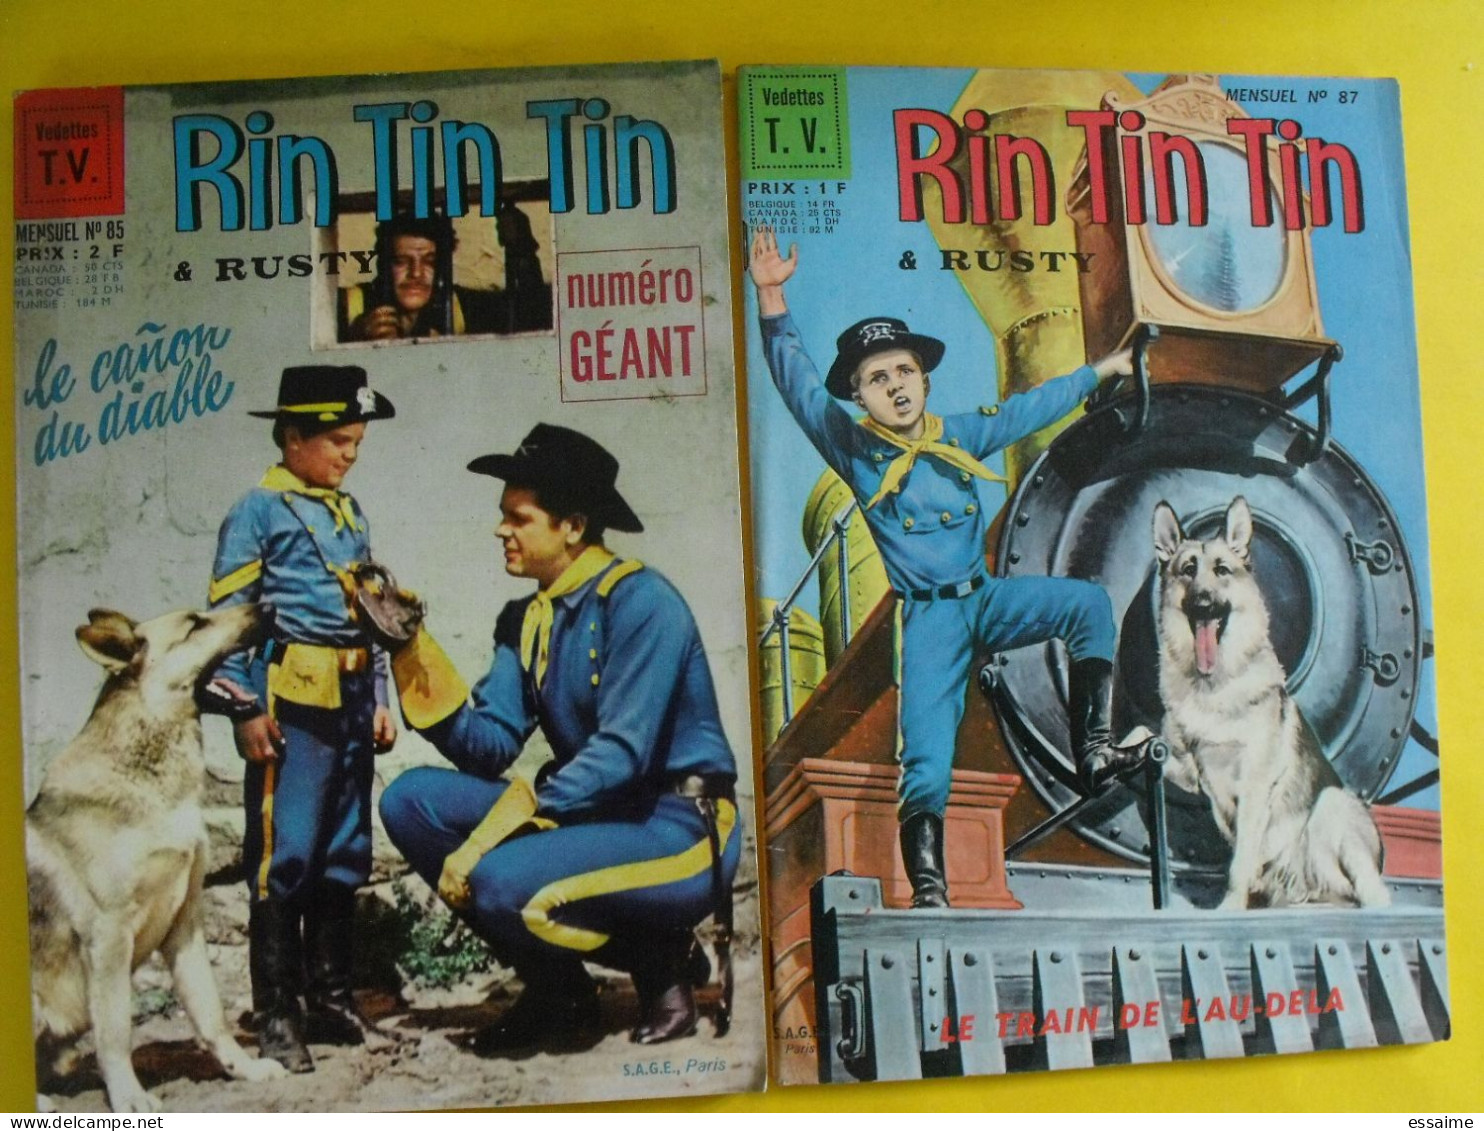 lot relié de 12 n° de Rintintin Rin Tin Tin et Rusty. mensuel Sagédition vedettes TV. kid roy découpages indiens 1966-68